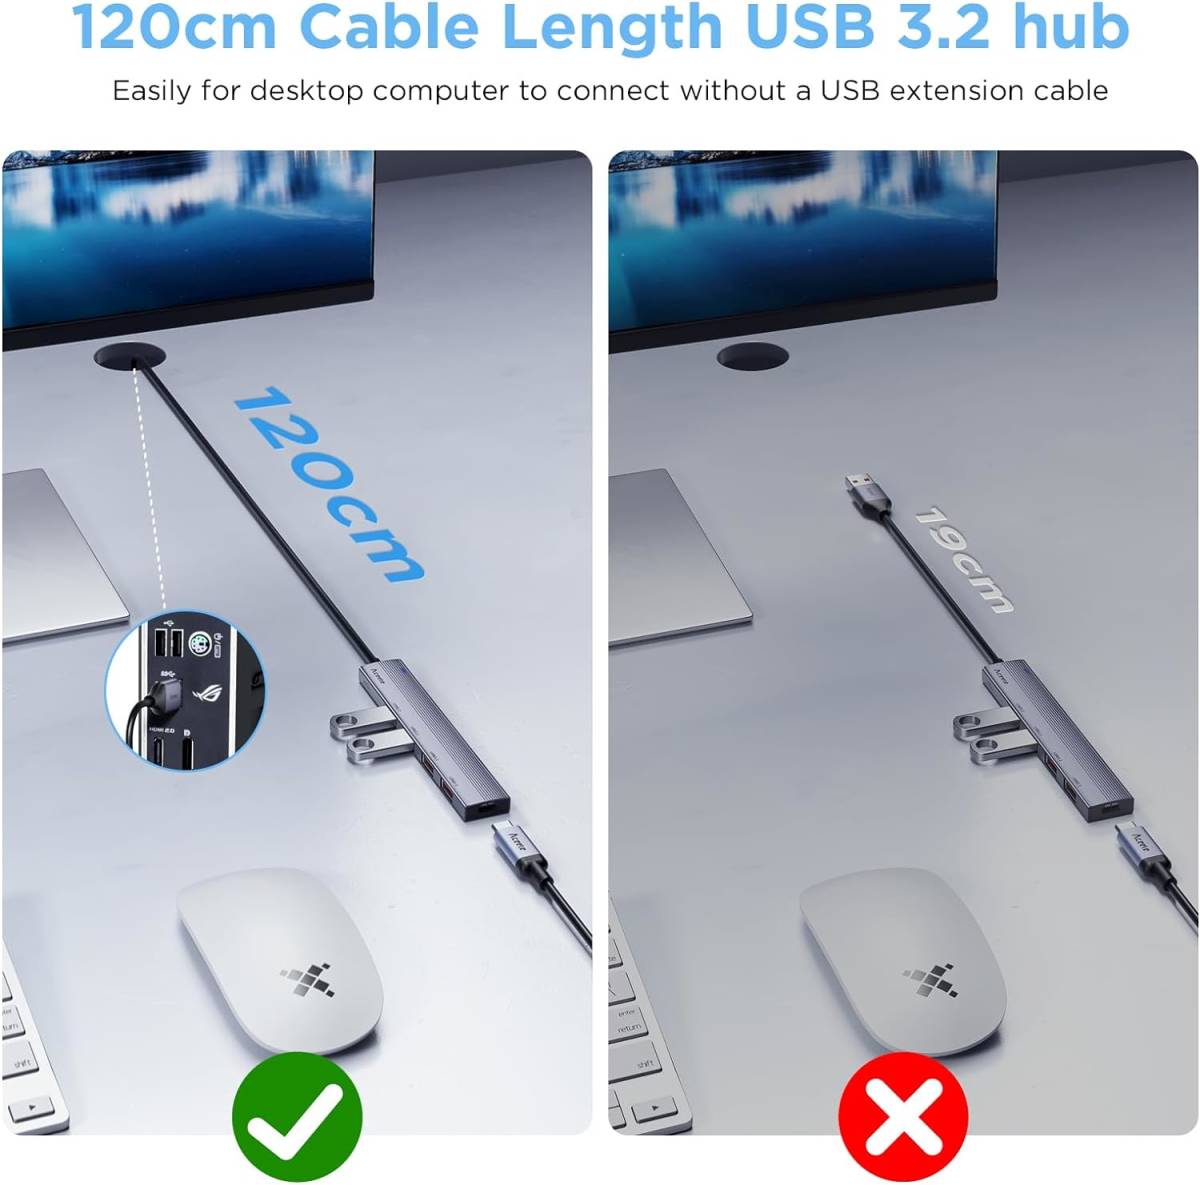 Aceele USBハブ 10Gbps 4ポート拡張 USB A to USB 3.2 変換アダプタ 4 USB-A とType-c電源ポート付きUSB 3.2 ハブ 120CM ケーブル付き_画像5